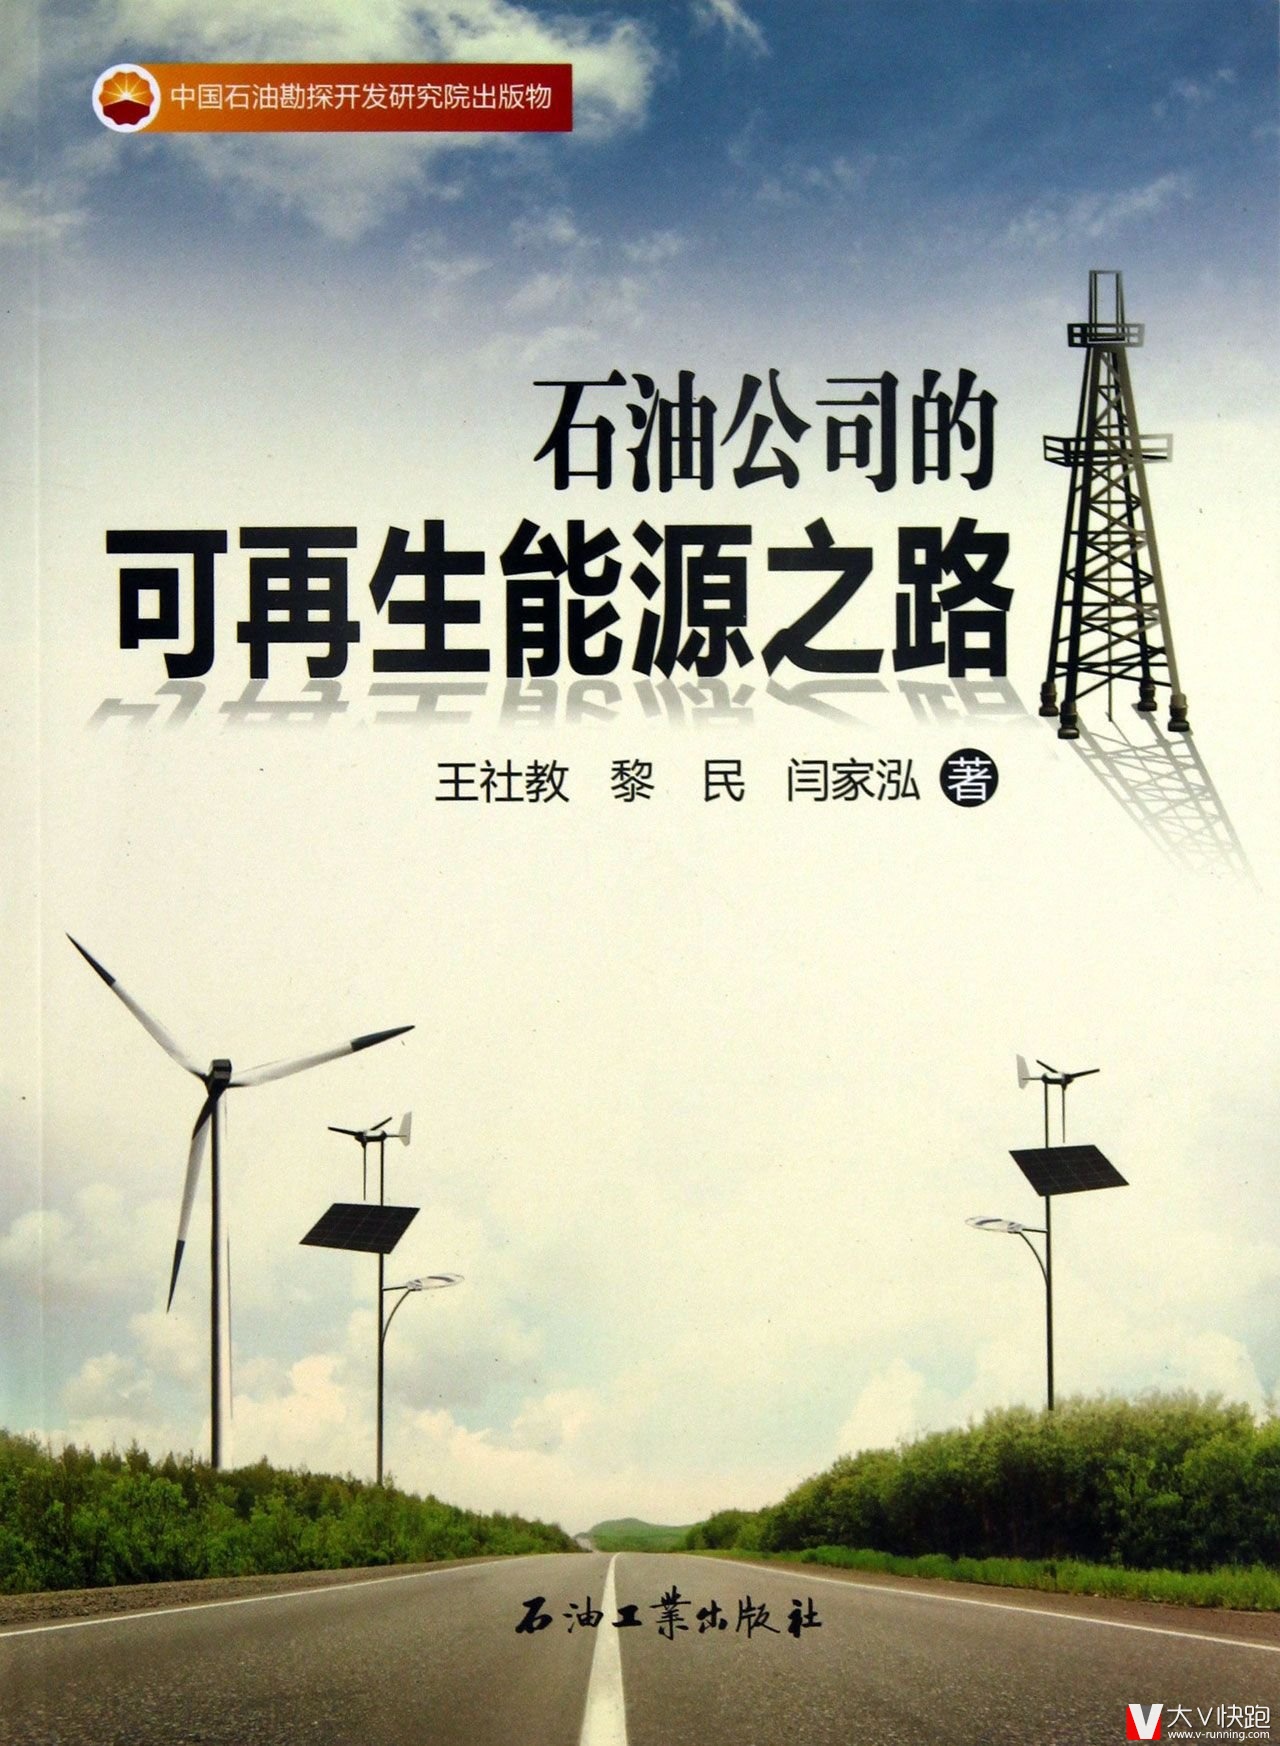 石油公司的可再生能源之路王社教、黎民、闫家泓(作者)